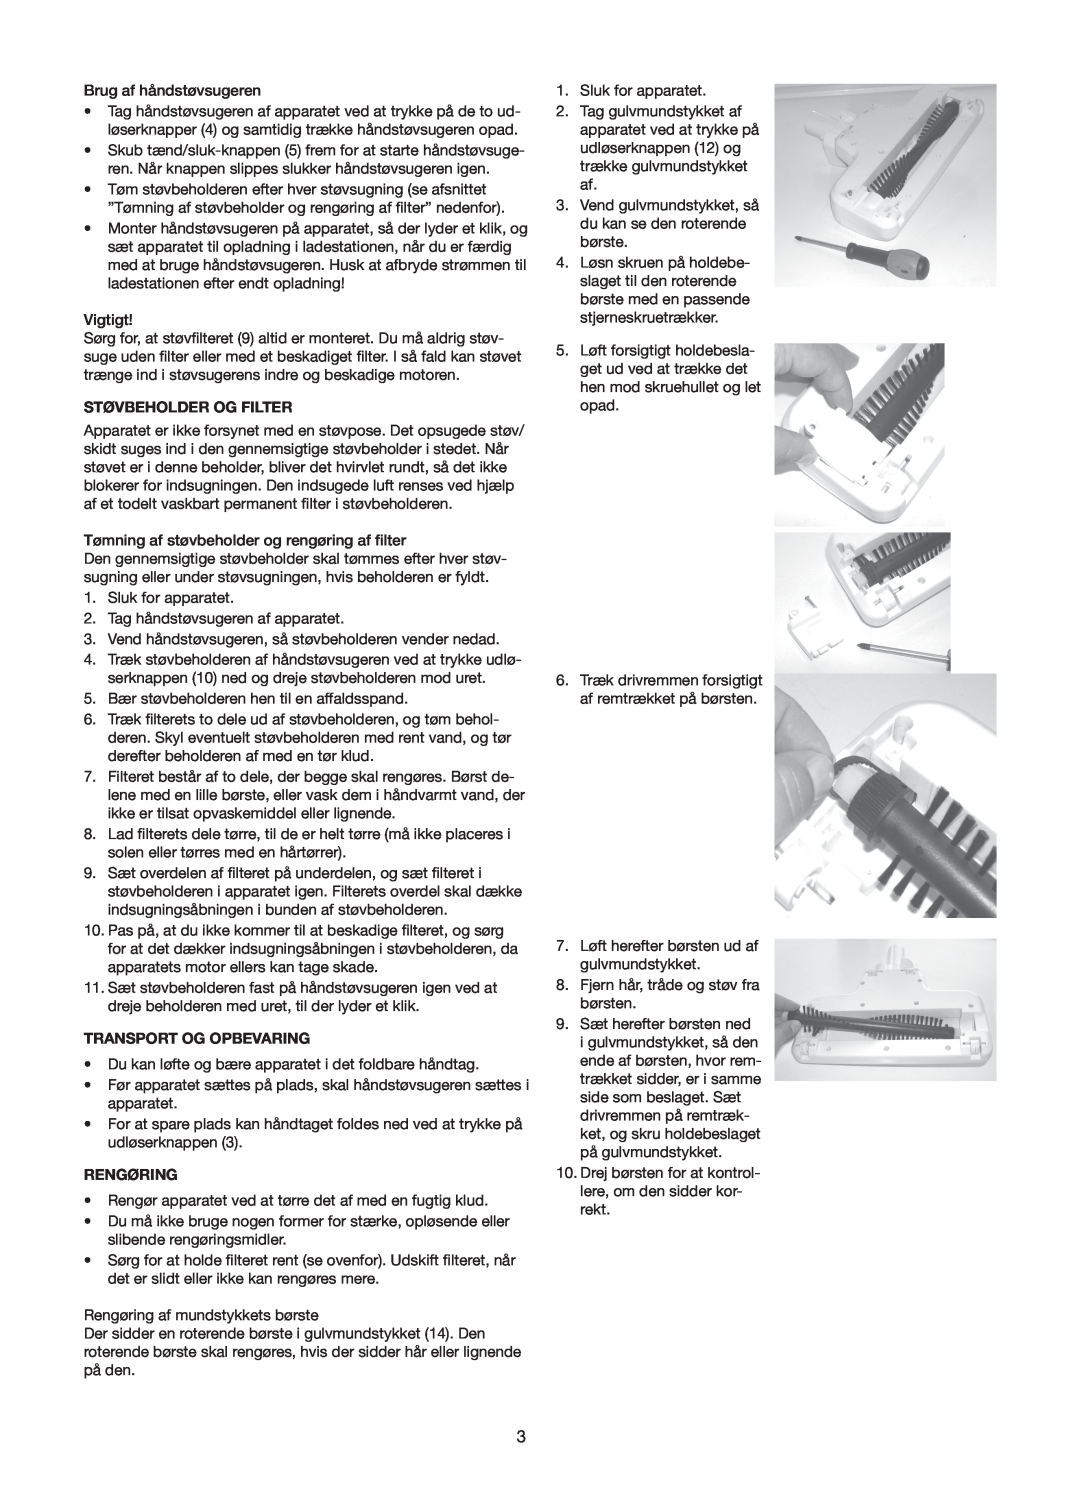 Melissa 640-110/114/127 manual Støvbeholder Og Filter, Transport Og Opbevaring, Rengøring 